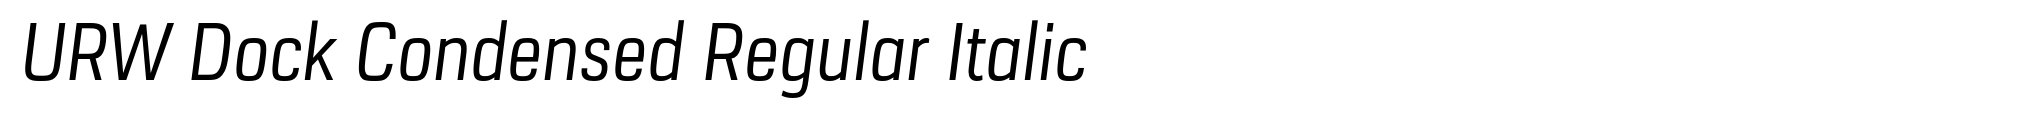 URW Dock Condensed Regular Italic image